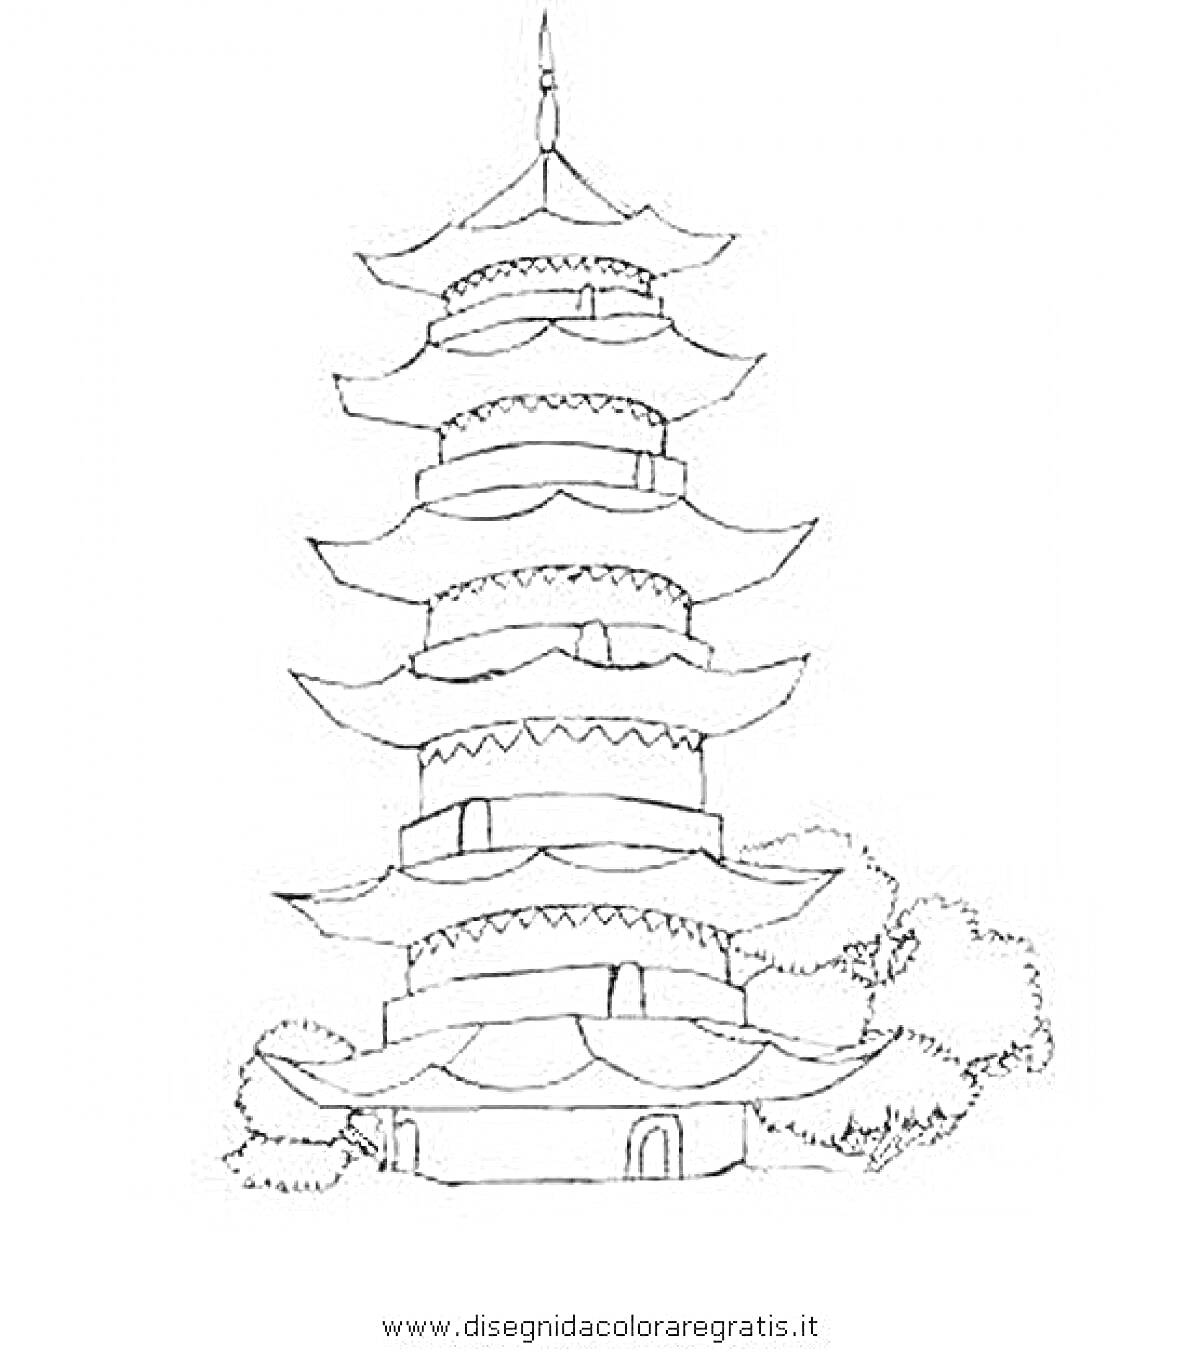 Пагода с семью уровнями, окружённая деревьями